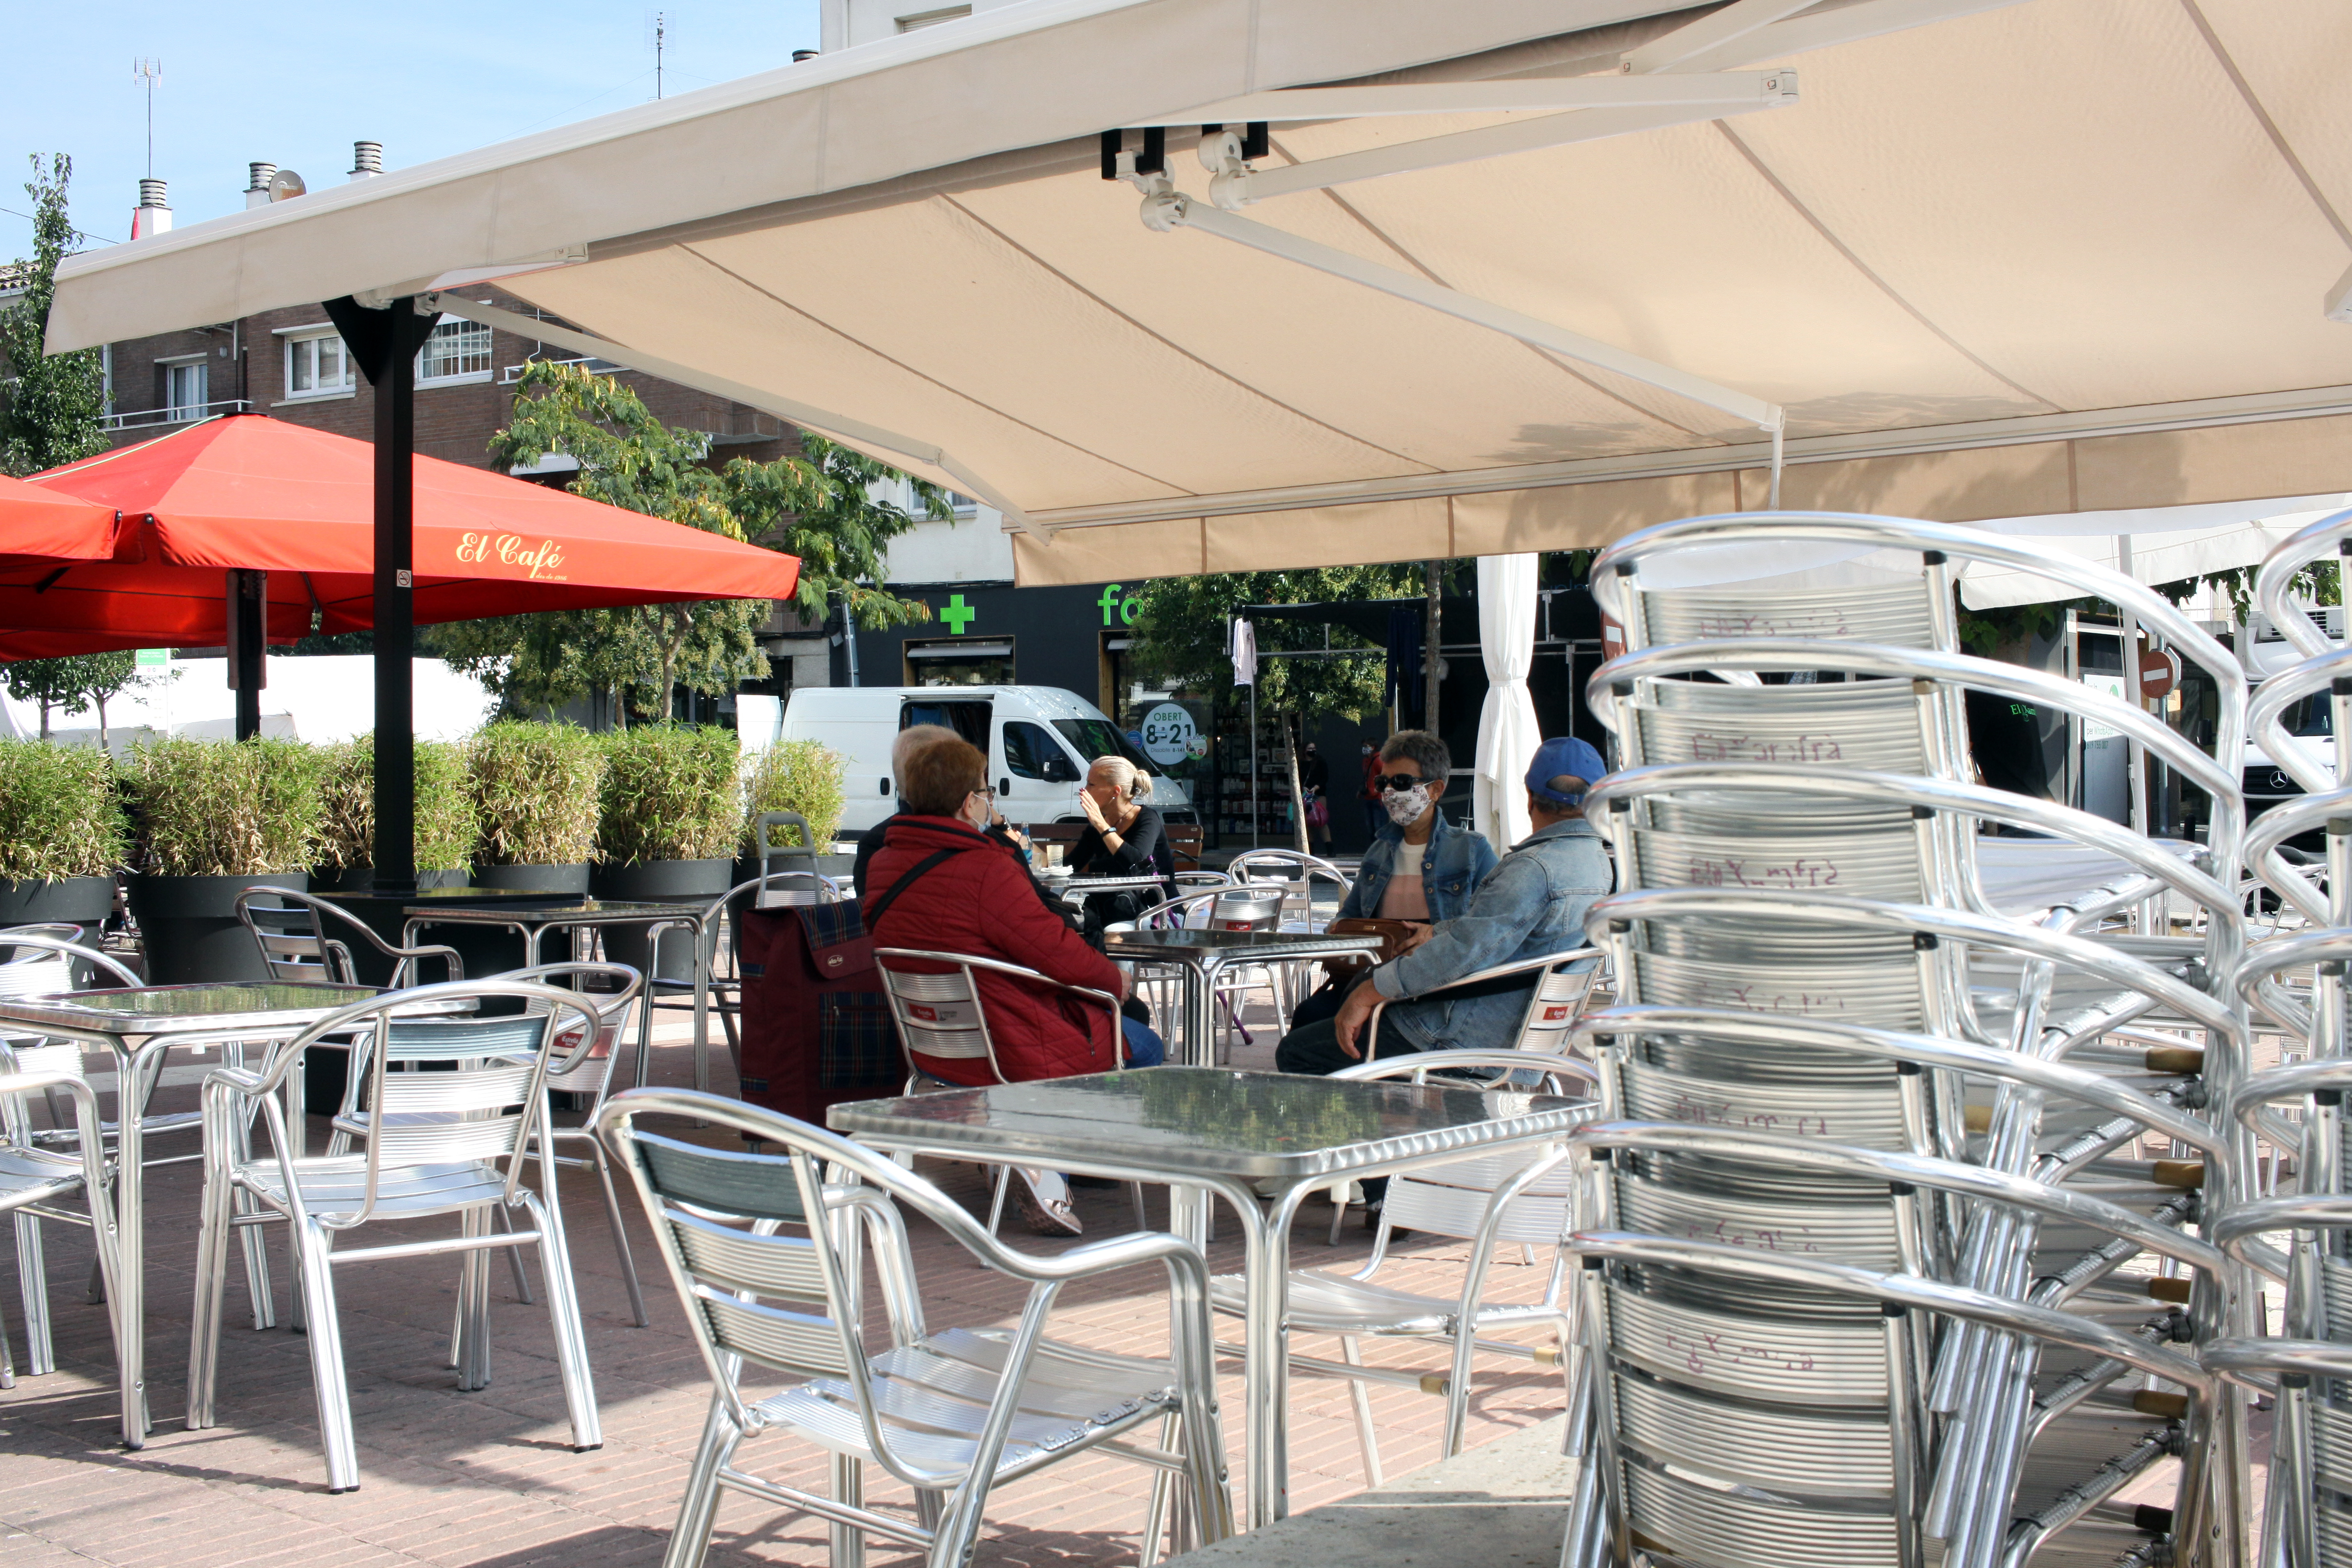 Els bars i restaurants poden sol·licitar la nova llicència per instal·lar terrasses a la via pública